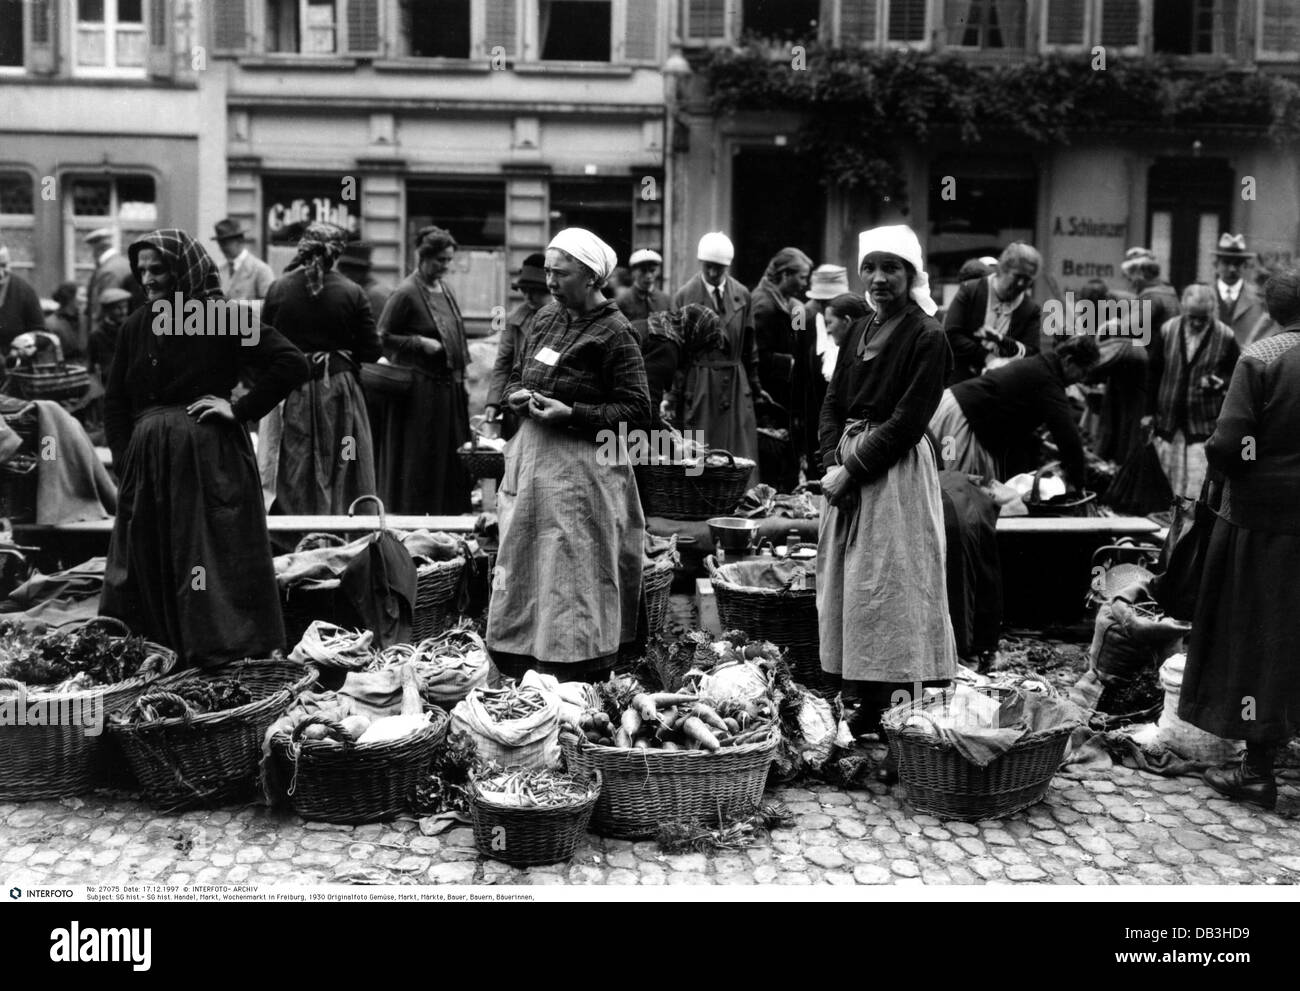 Handel, Markt, Wochenmarkt Freiburg, Deutschland, 1930, Zusatzrechte-Clearenzen-nicht vorhanden Stockfoto